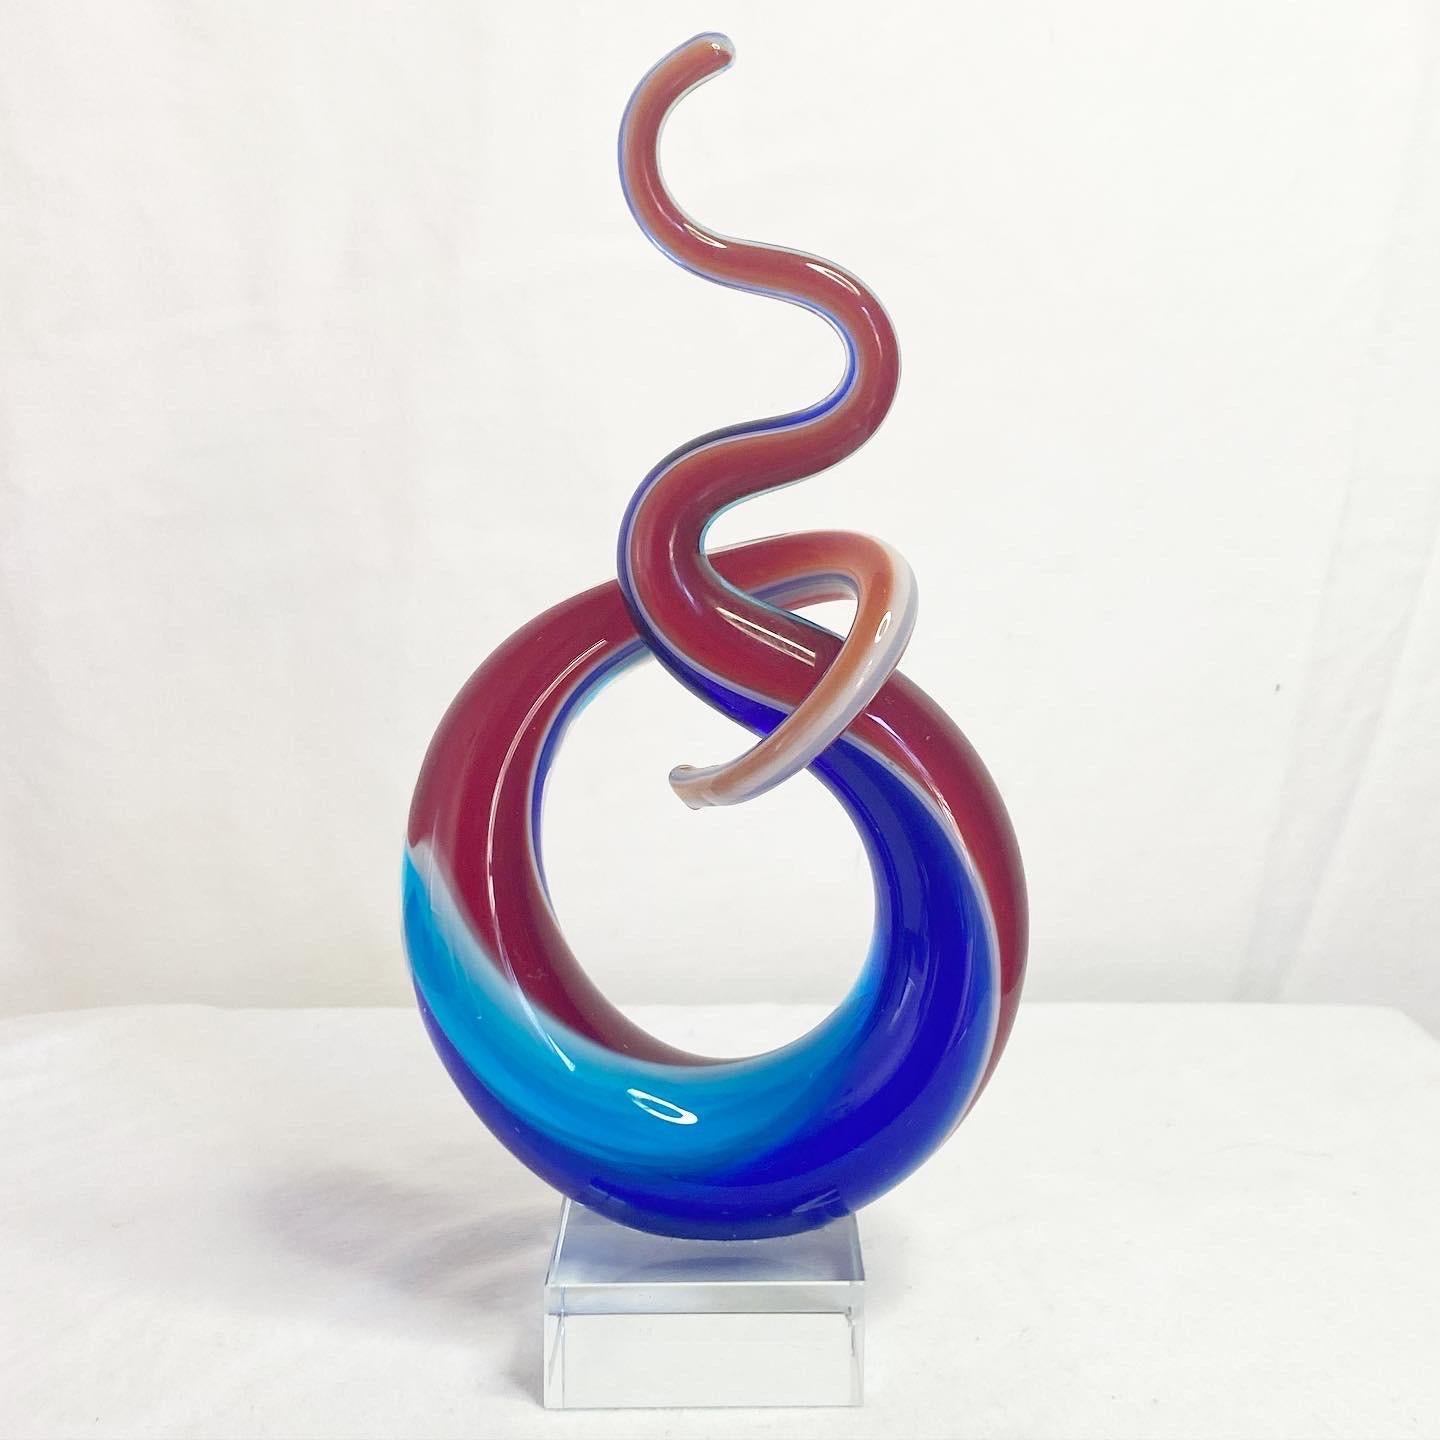  Außergewöhnliche postmoderne Glasskulptur auf einer Vase aus Lucit. Mit einem mundgeblasenen roten und blauen Wirbel.
